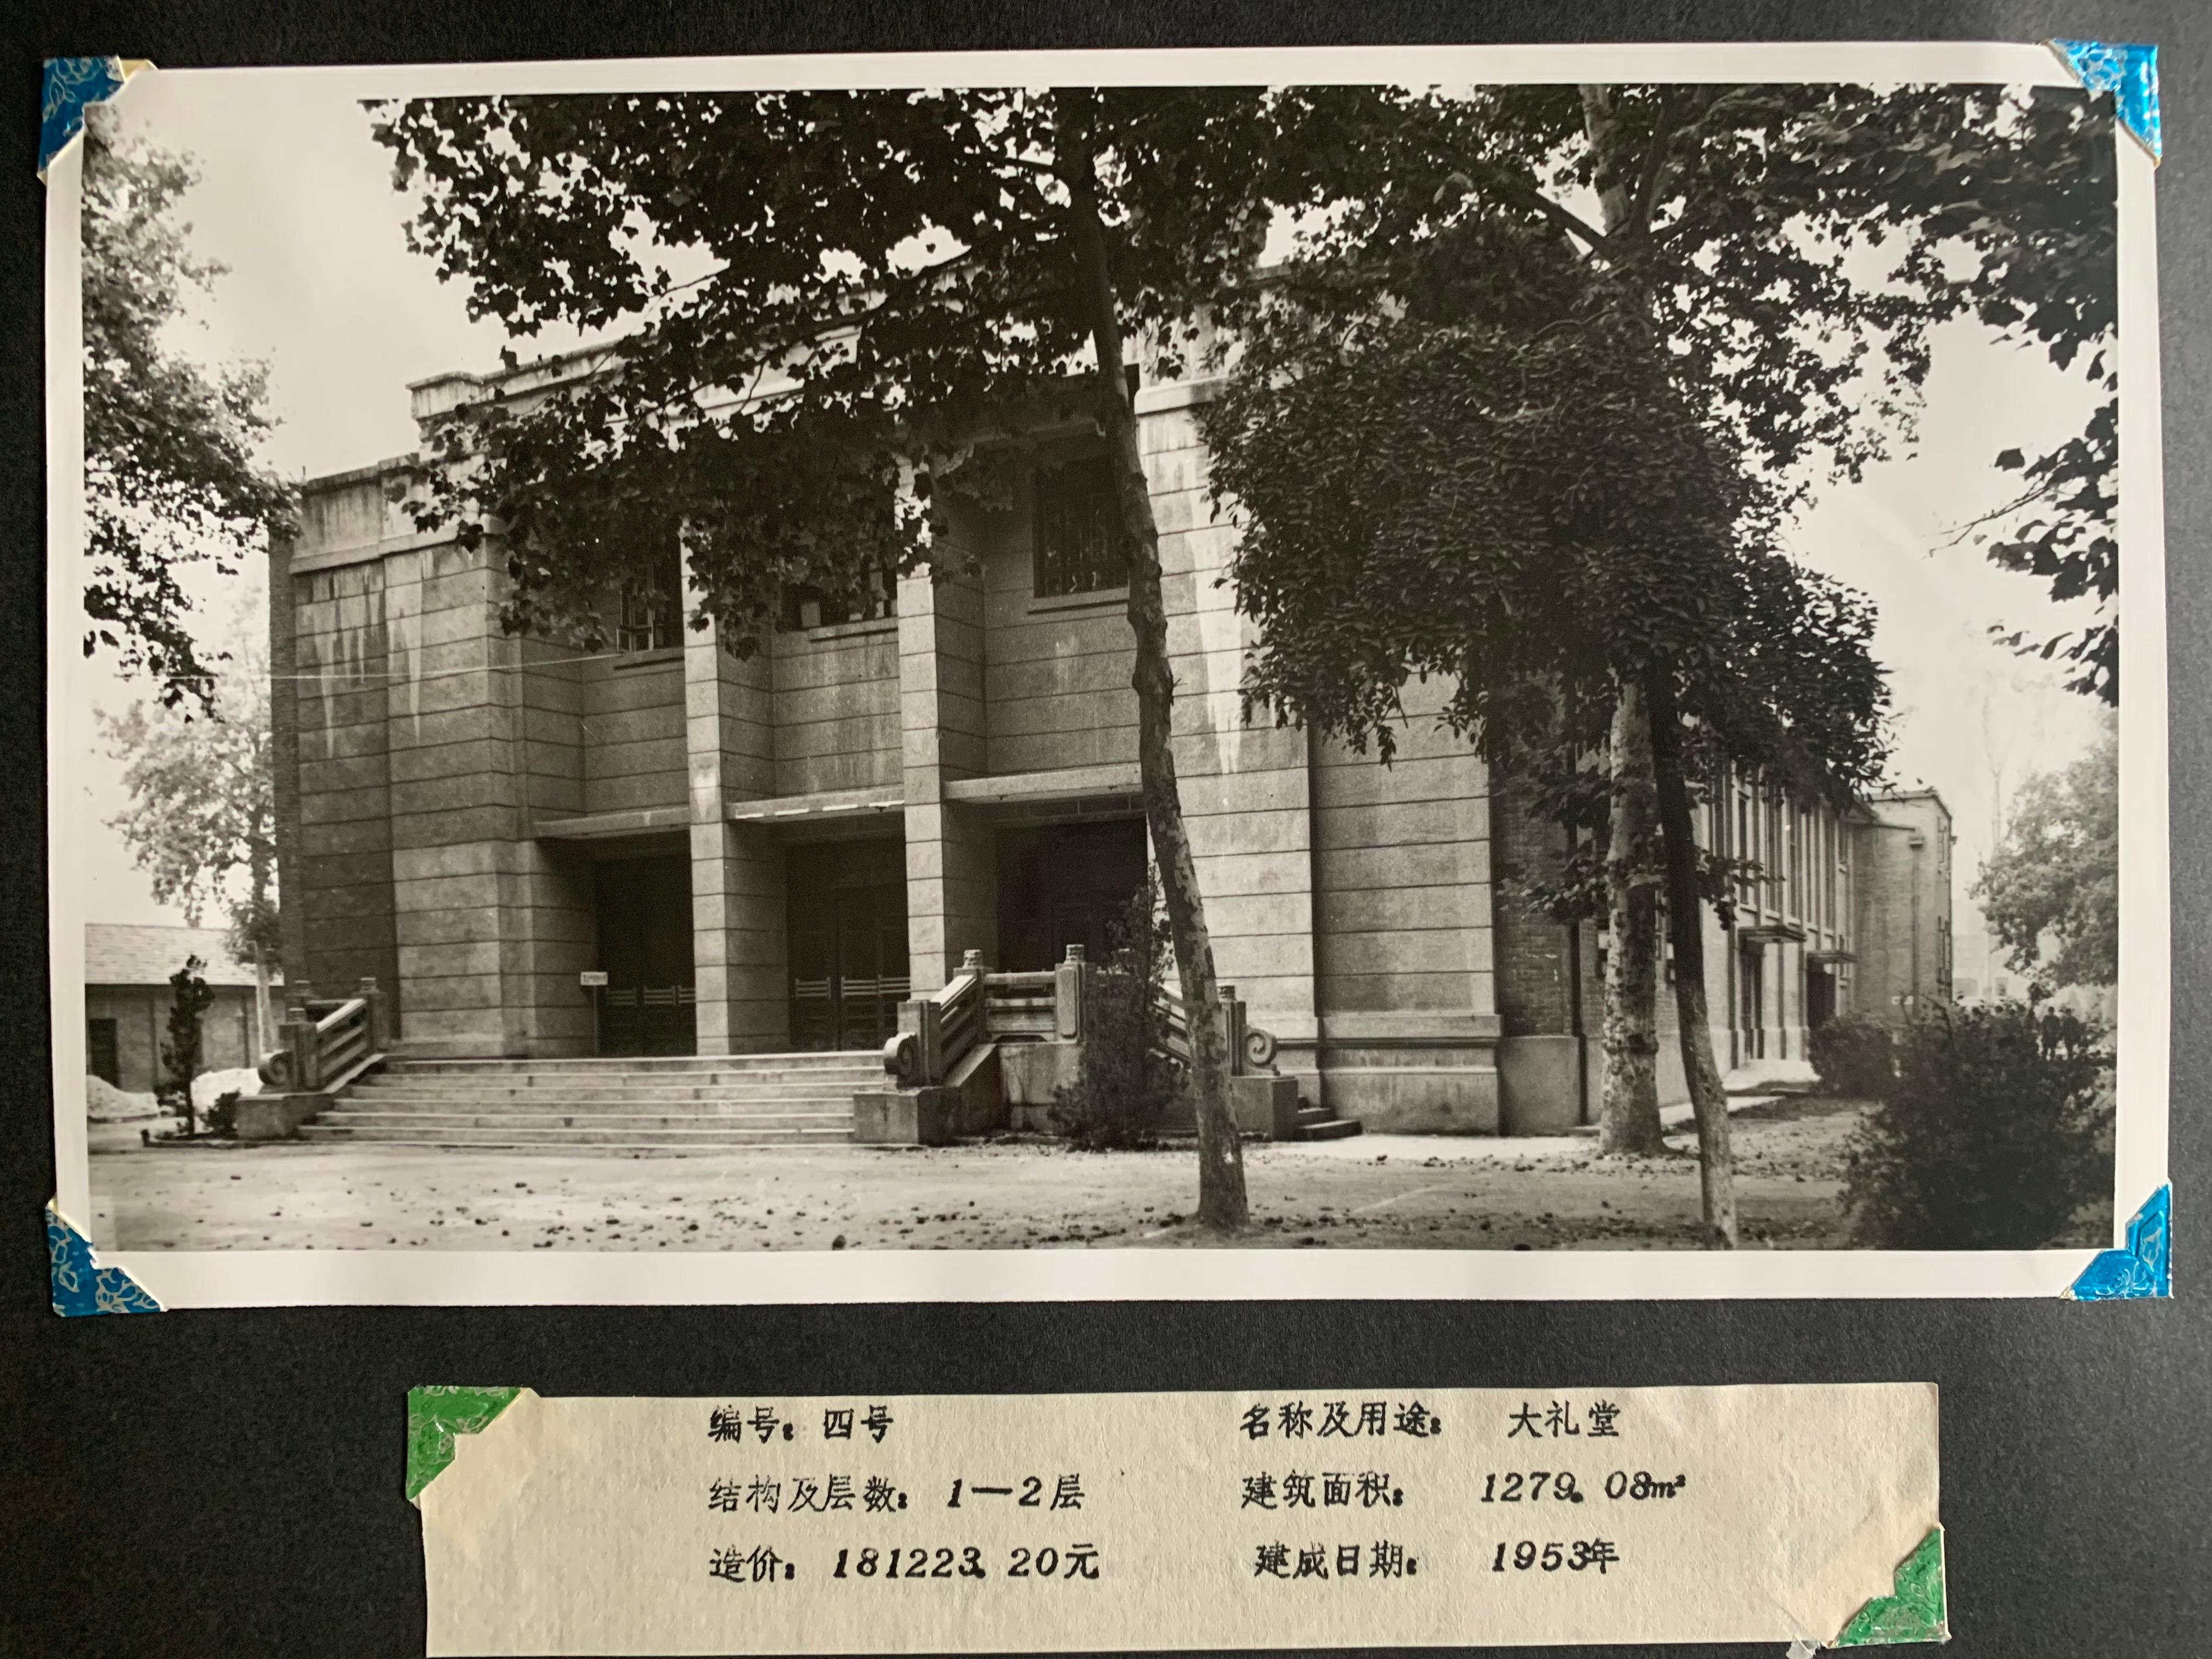 1953年建成的雁塔校区大礼堂1.JPG